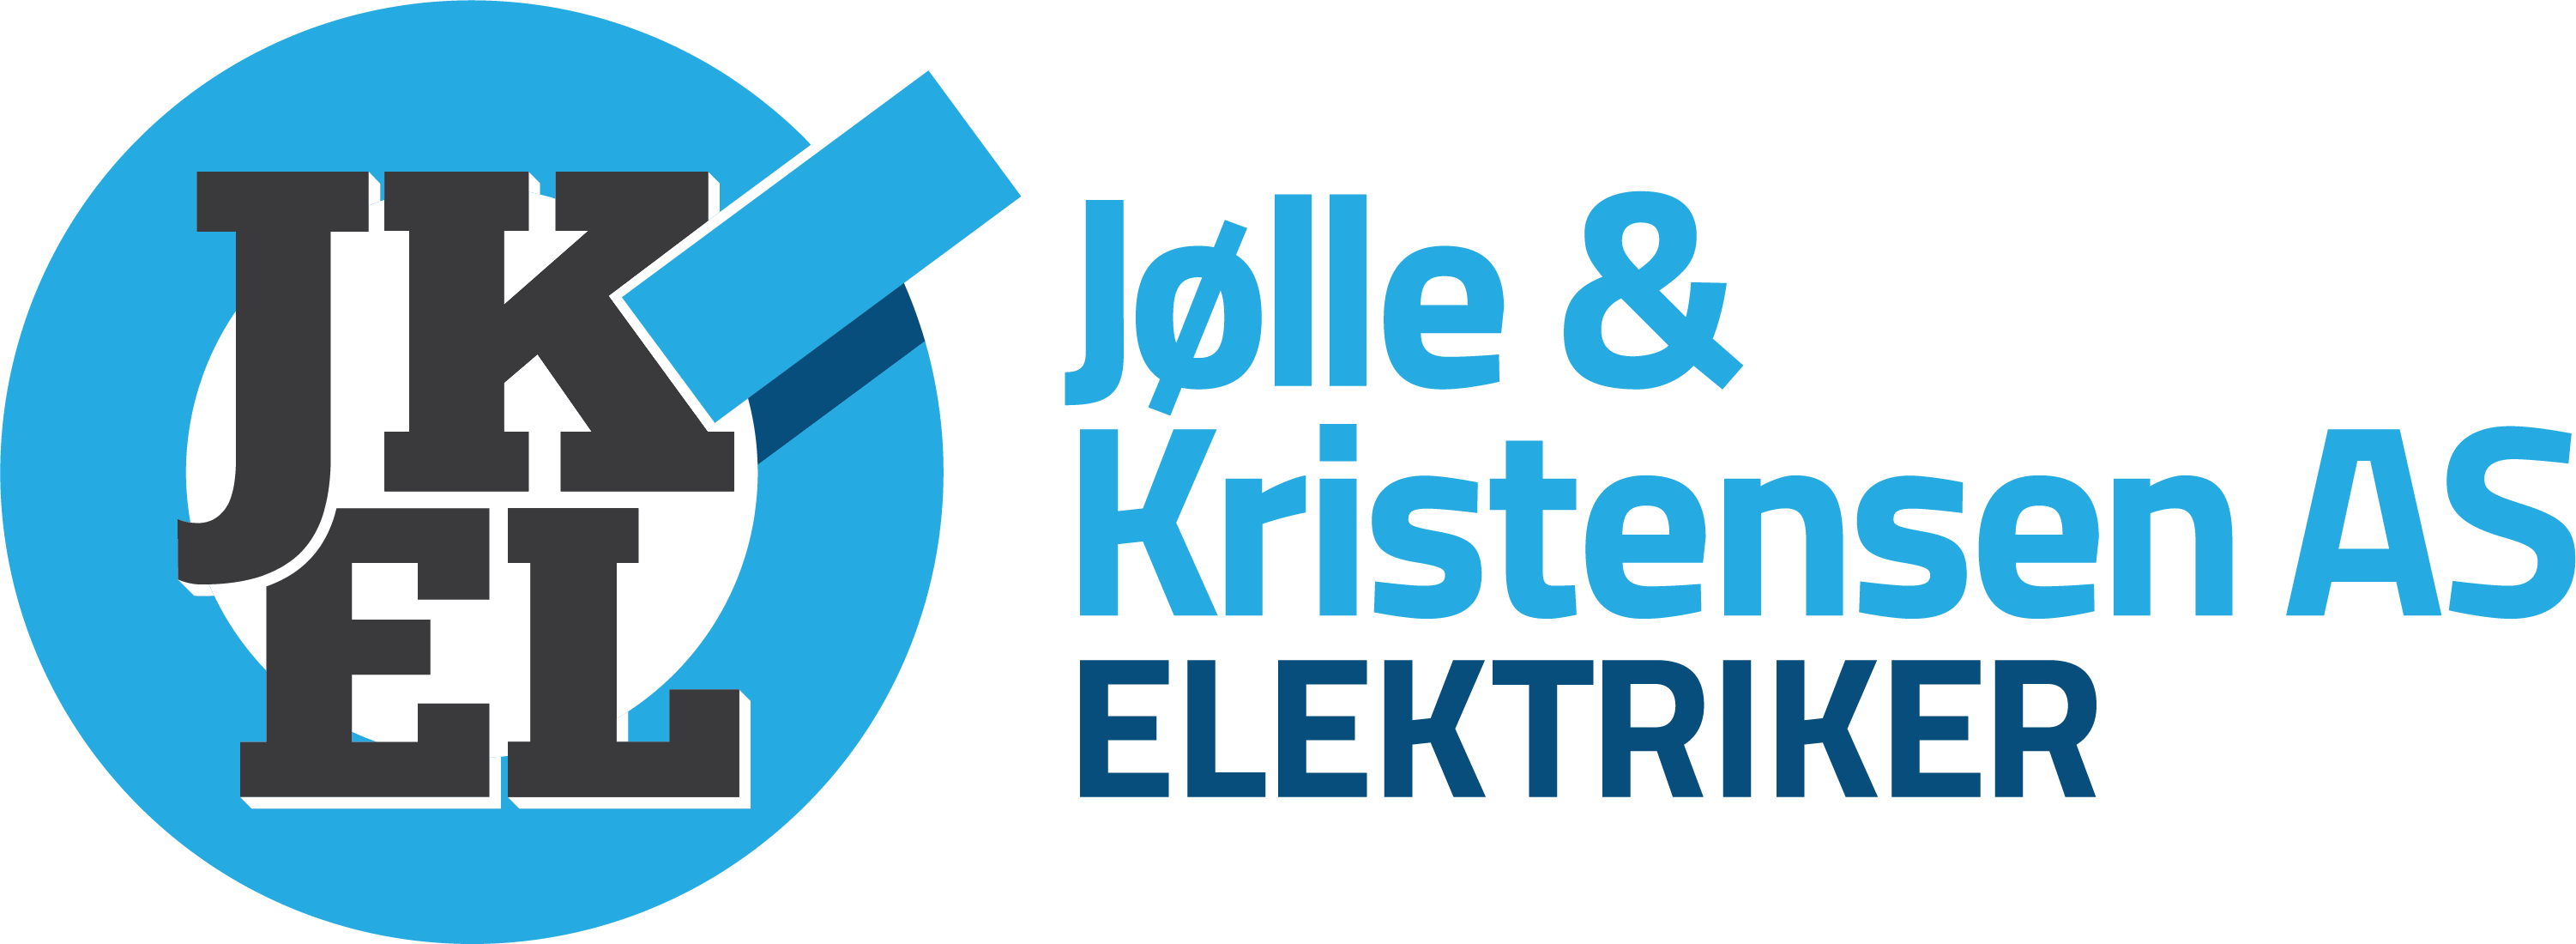 Medlemstilbud fra Jølle & Kristensen